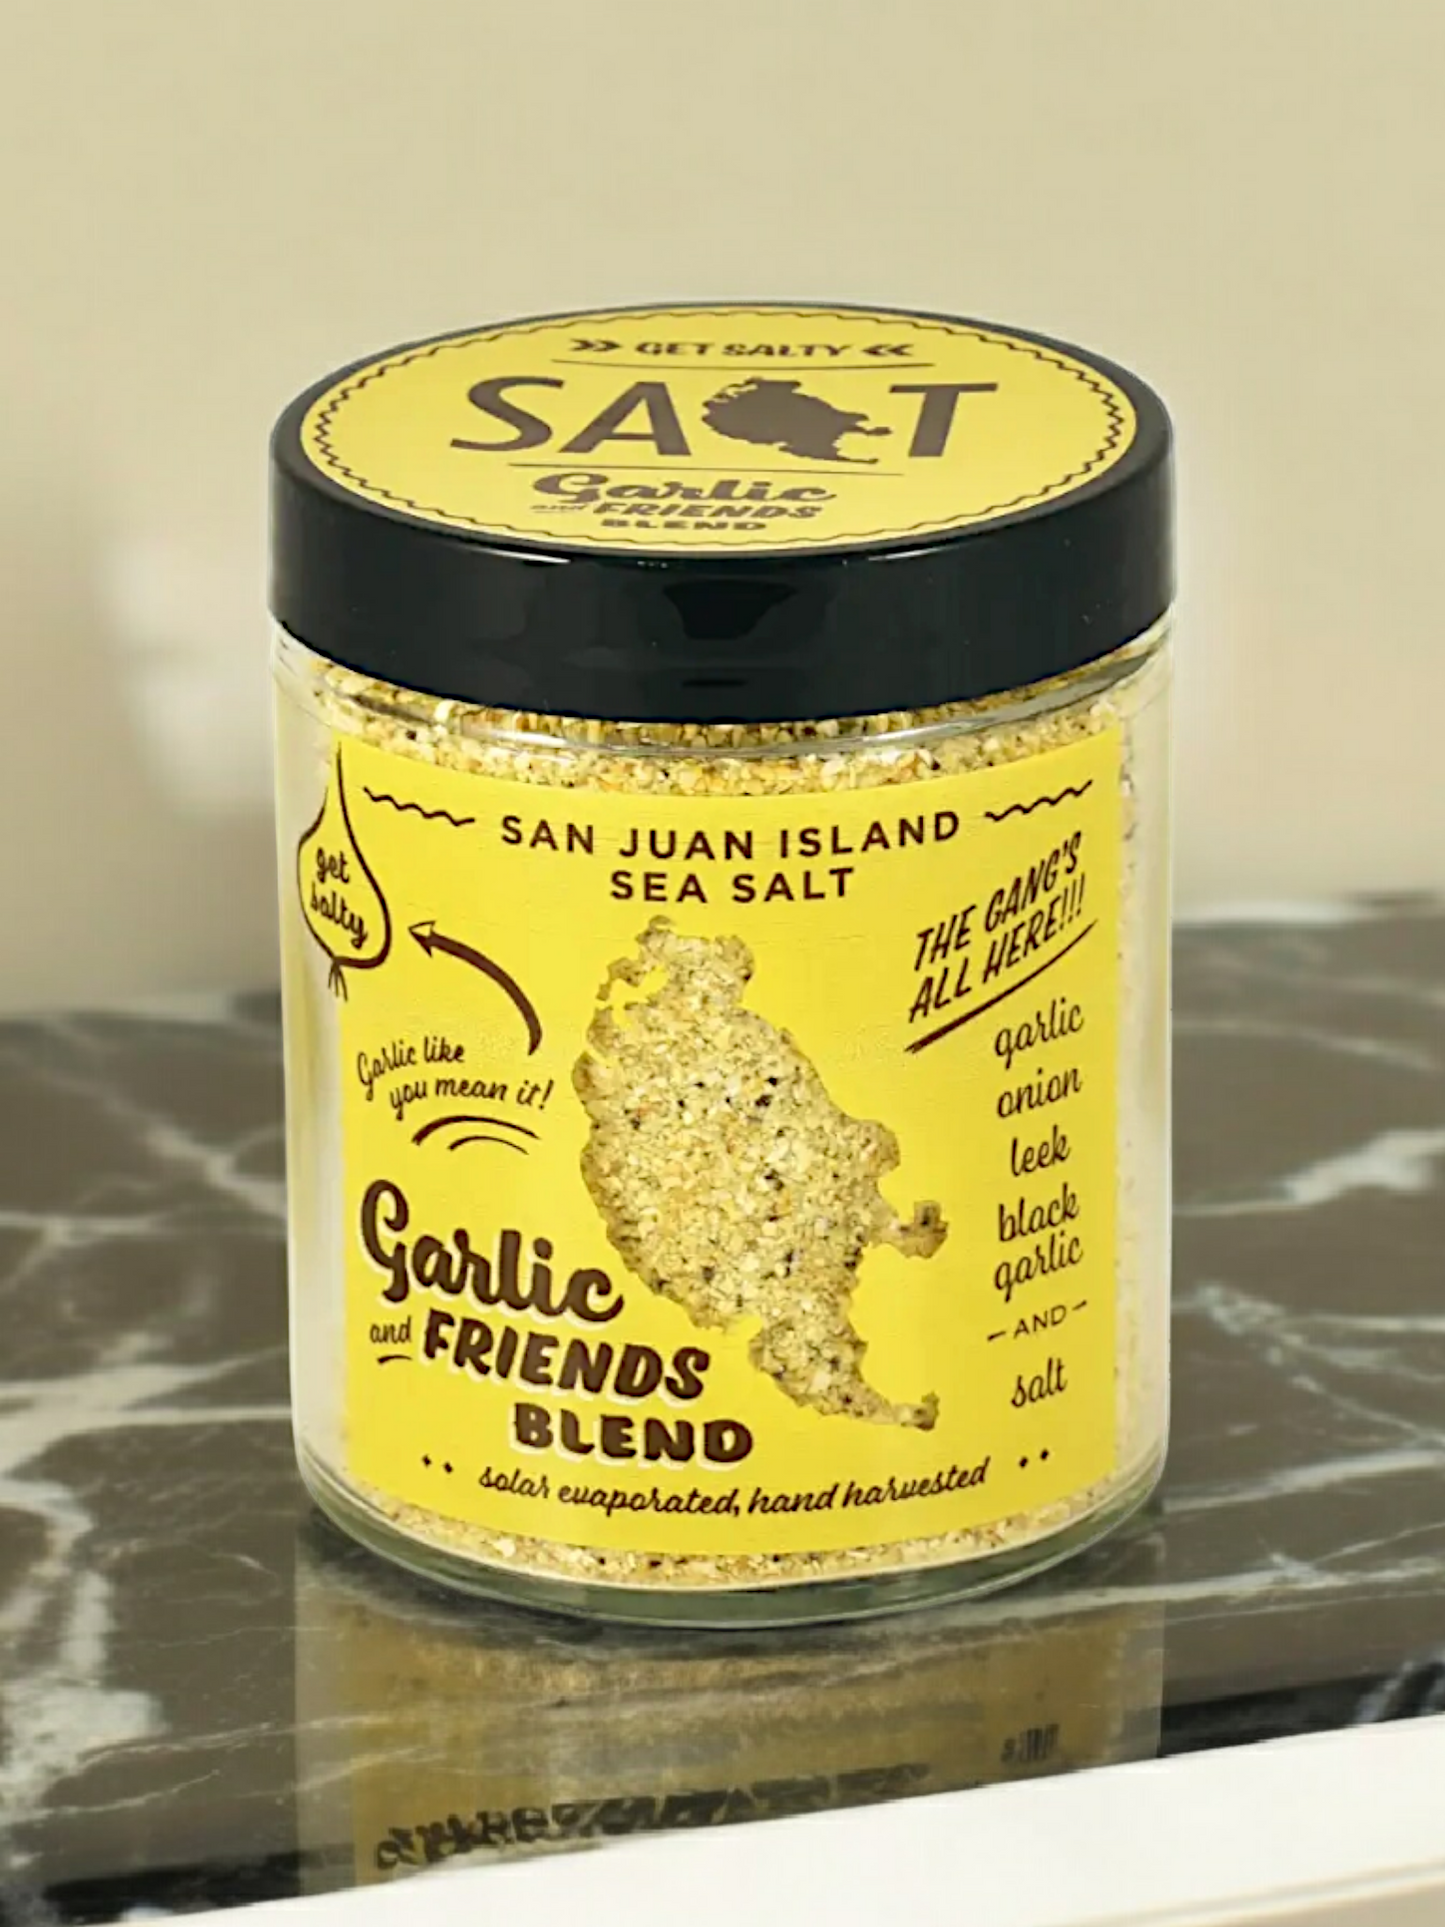 San Juan Island sea salt (garlic and friends blend)